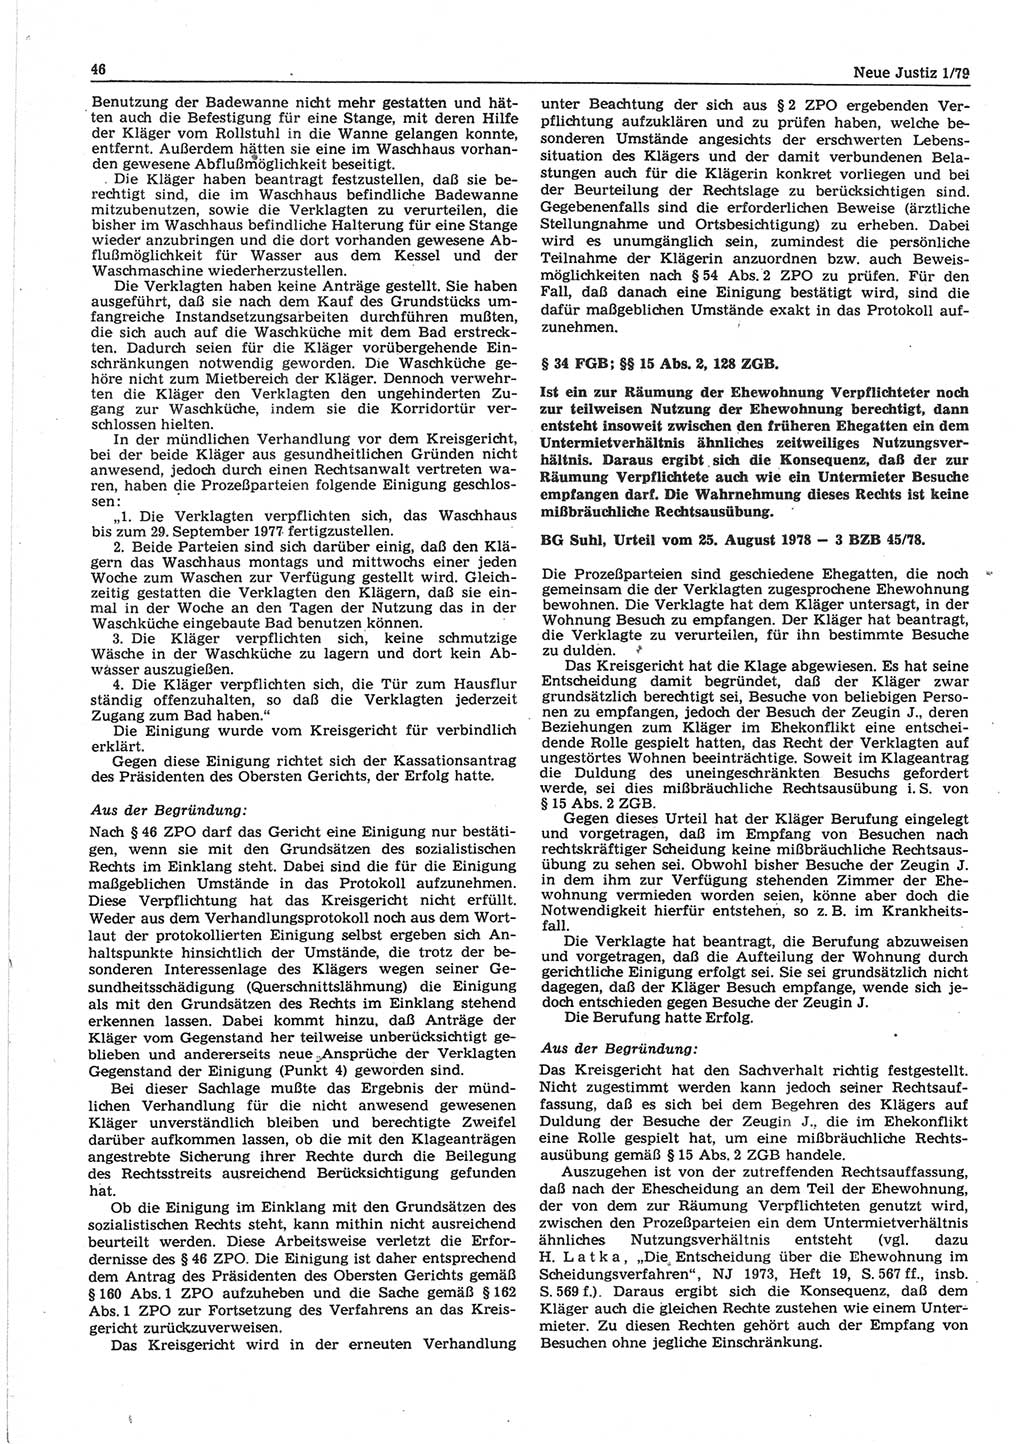 Neue Justiz (NJ), Zeitschrift für sozialistisches Recht und Gesetzlichkeit [Deutsche Demokratische Republik (DDR)], 33. Jahrgang 1979, Seite 46 (NJ DDR 1979, S. 46)